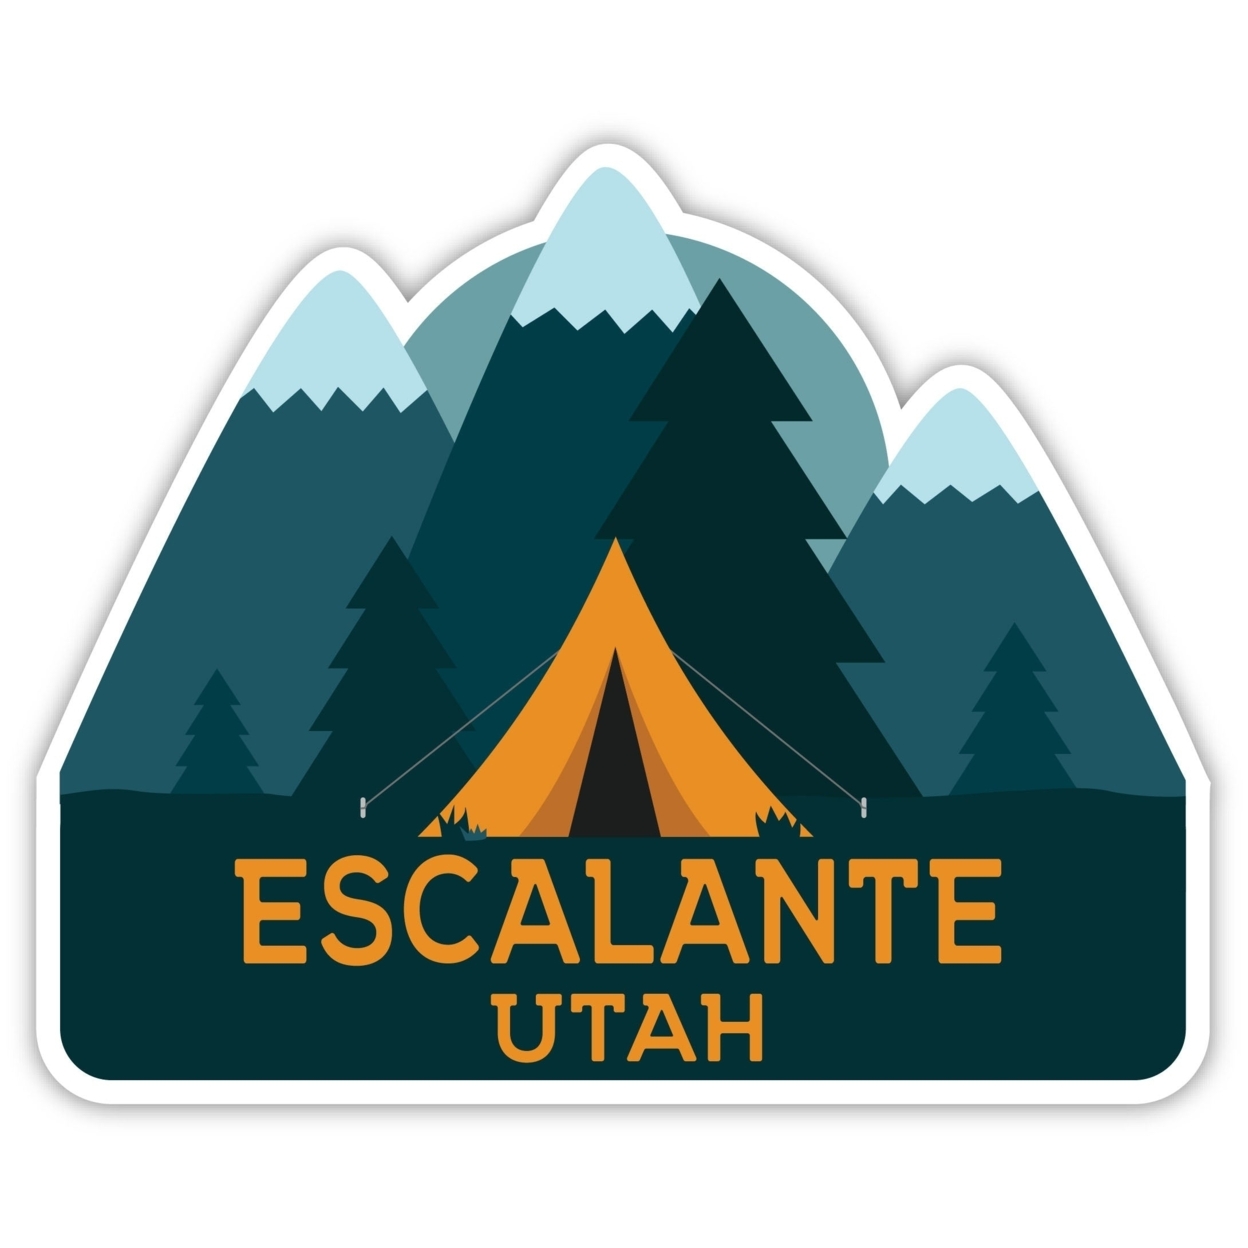 Escalante Utah Souvenir Decorative Stickers (Choose Theme And Size) - Single Unit, 2-Inch, Tent